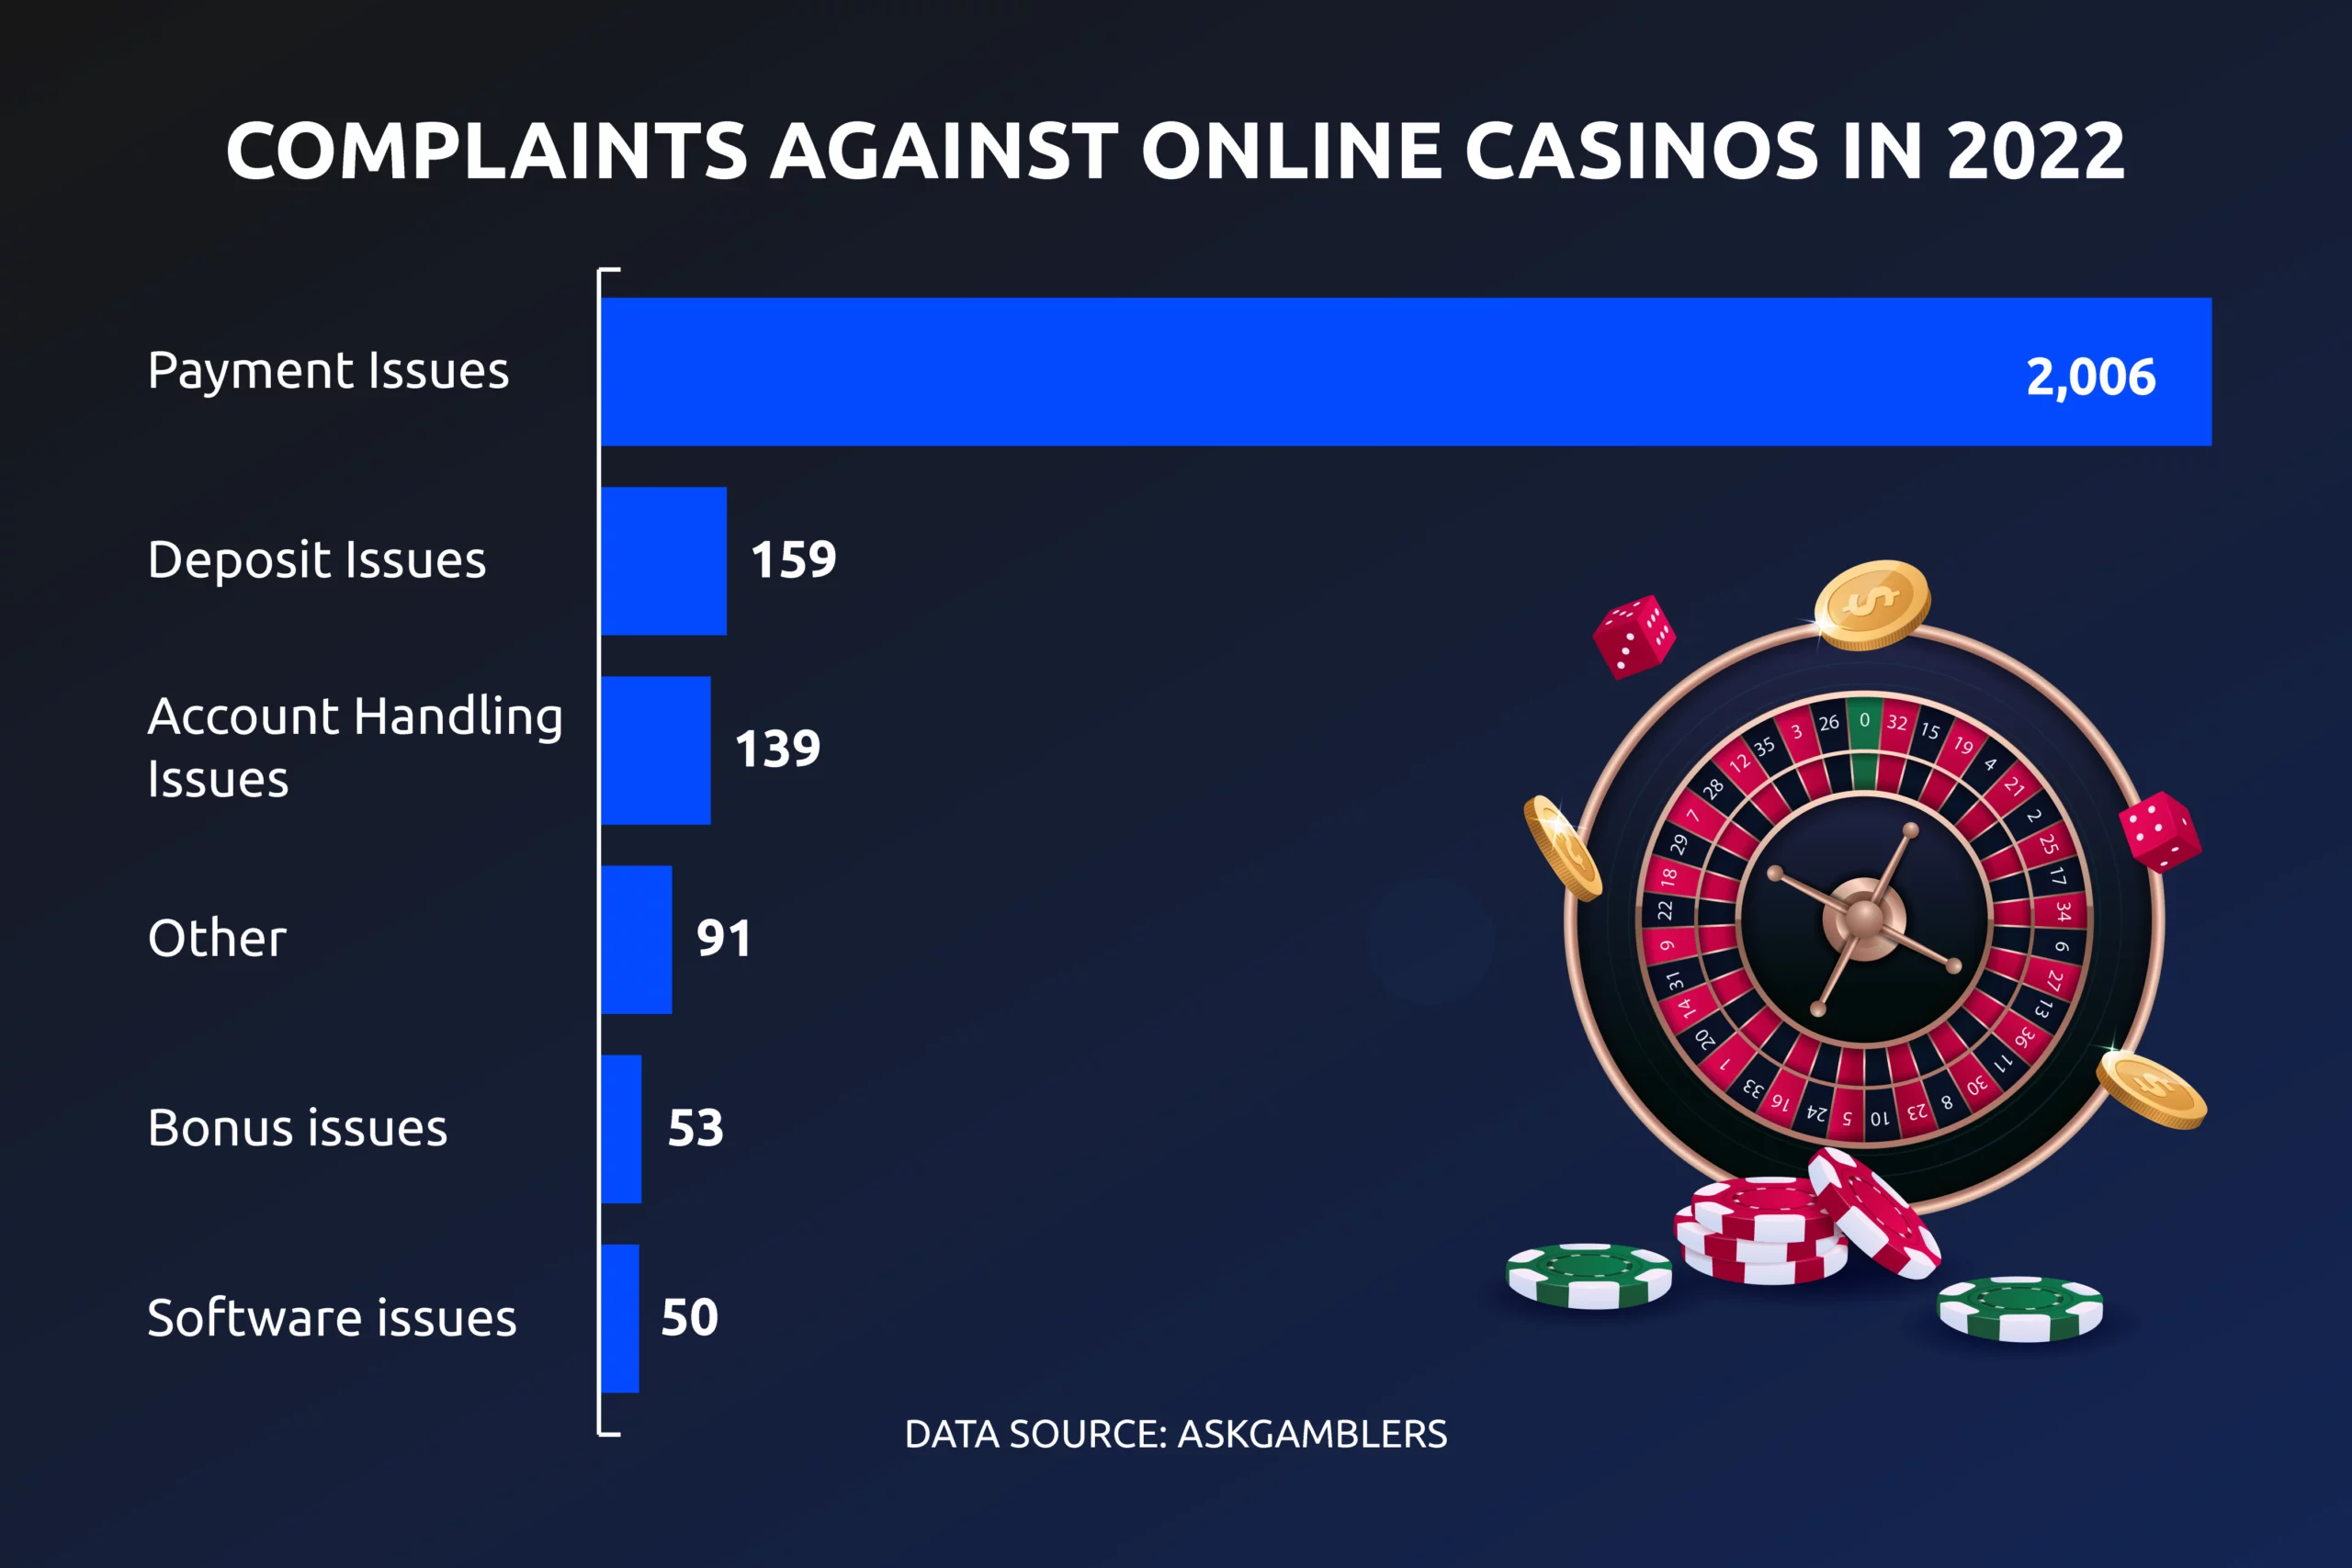 online casino complaints